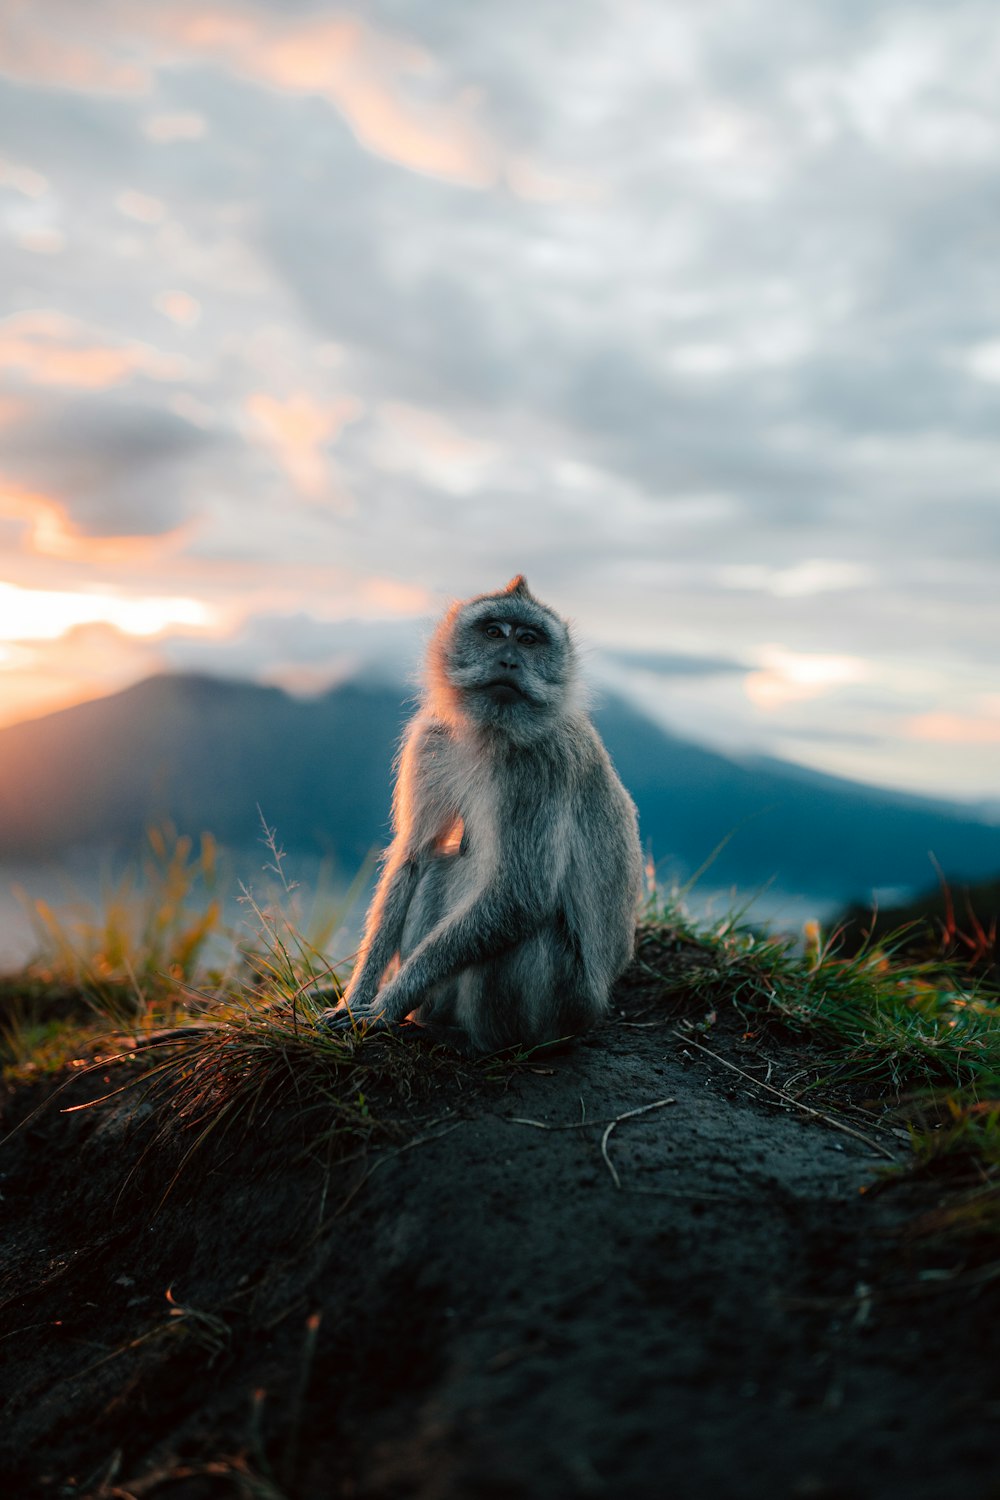 풀로 덮인 언덕 위에 앉아 있는 원숭이